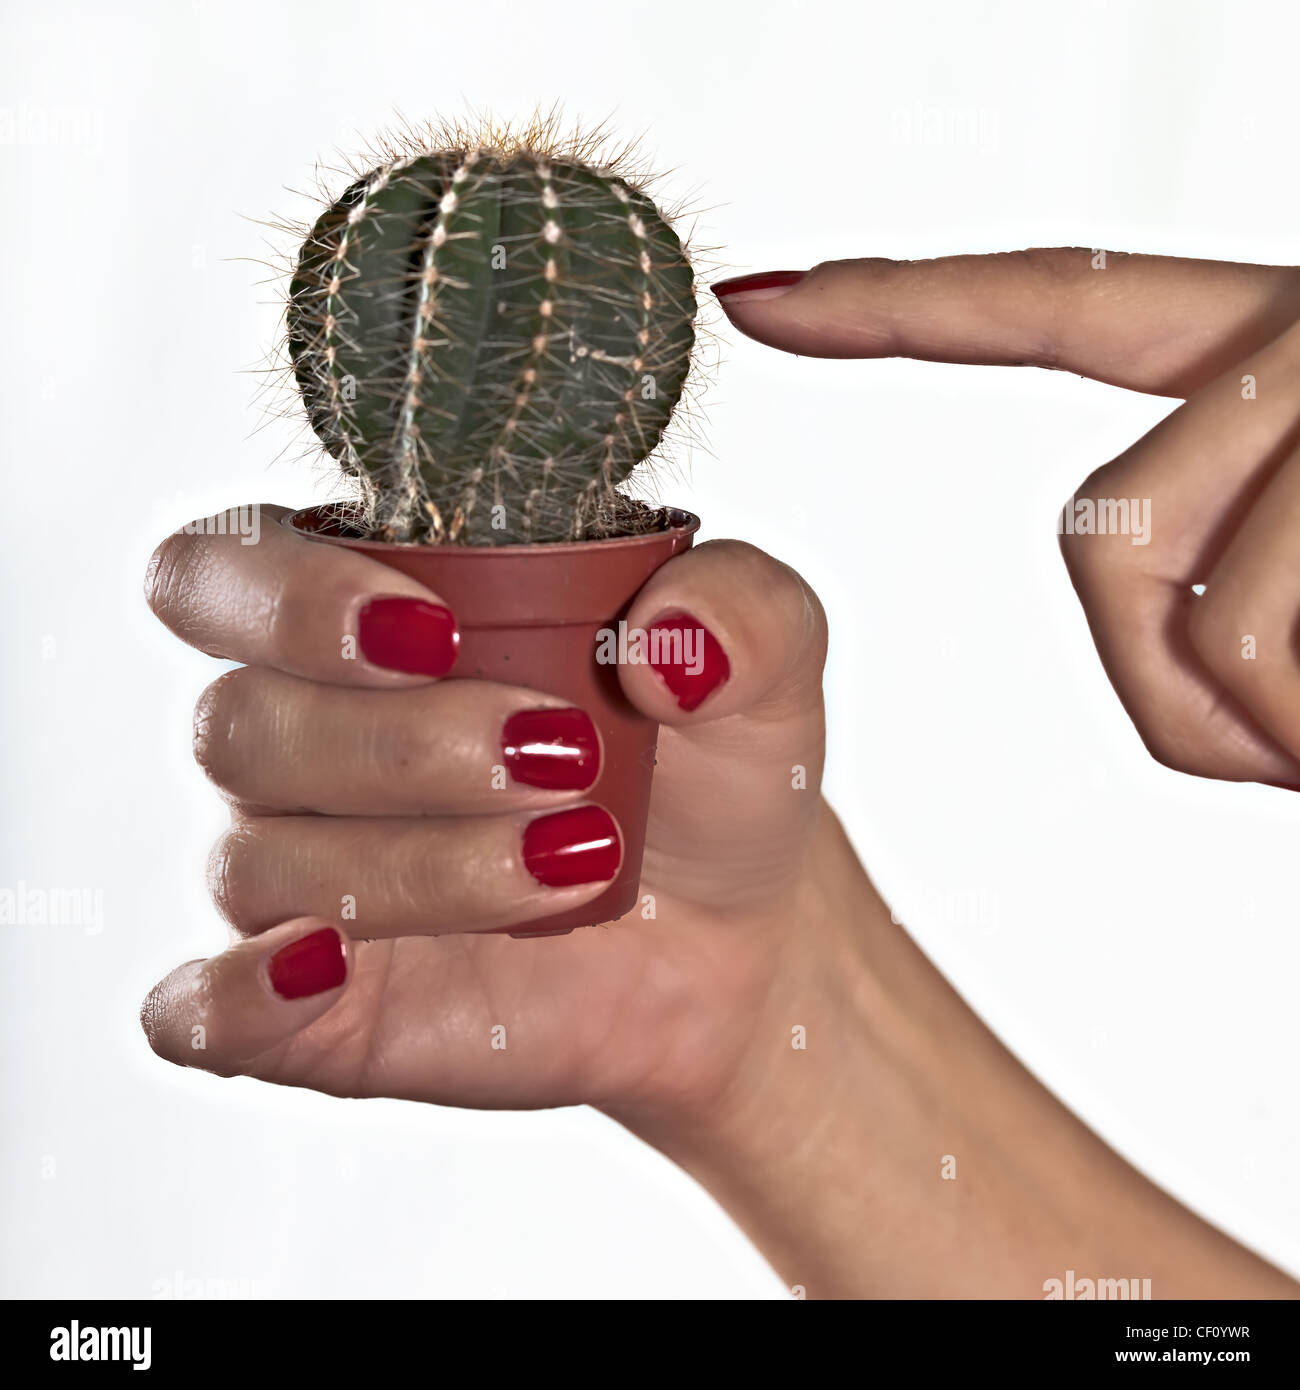 Une femme doigt touche un cactus Banque D'Images